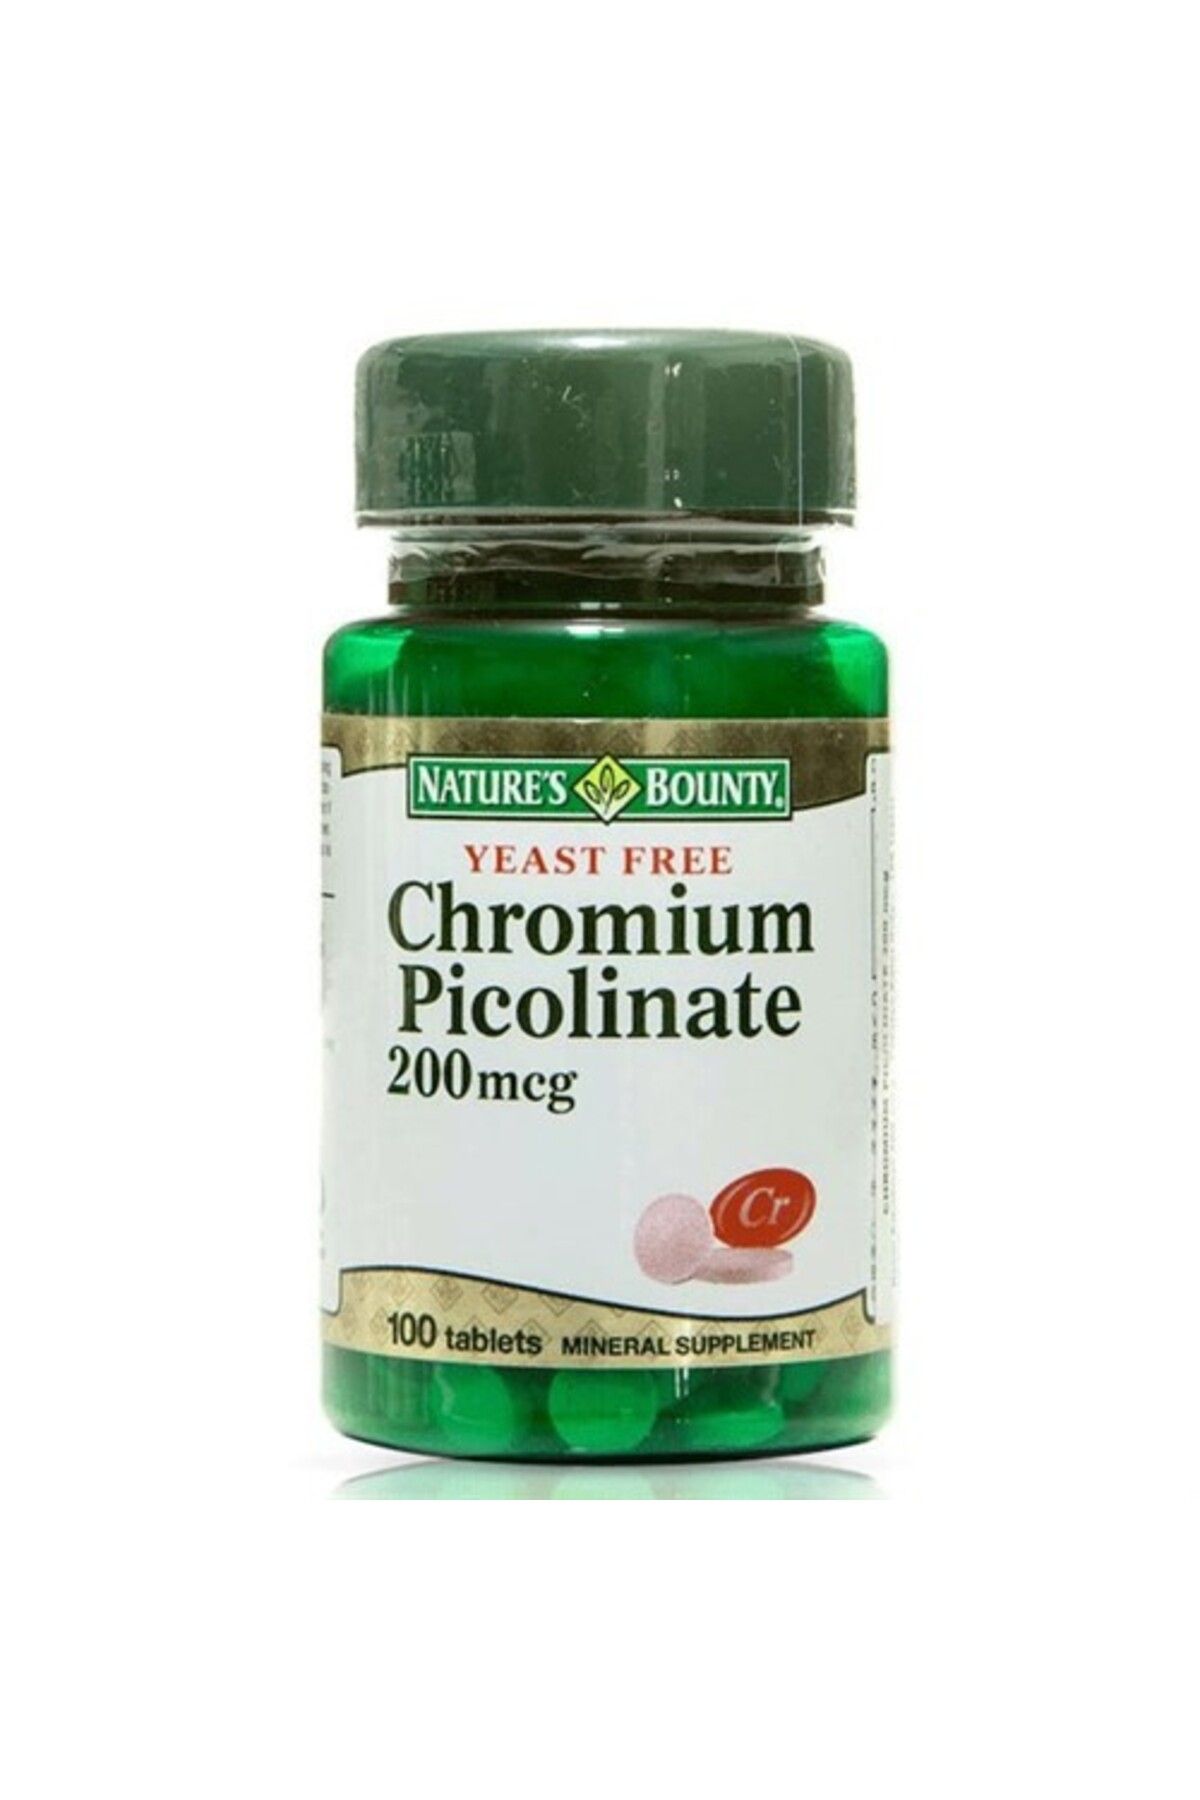 Natures Bounty Chromium Picolinate 200 Mcg 100 Tablet